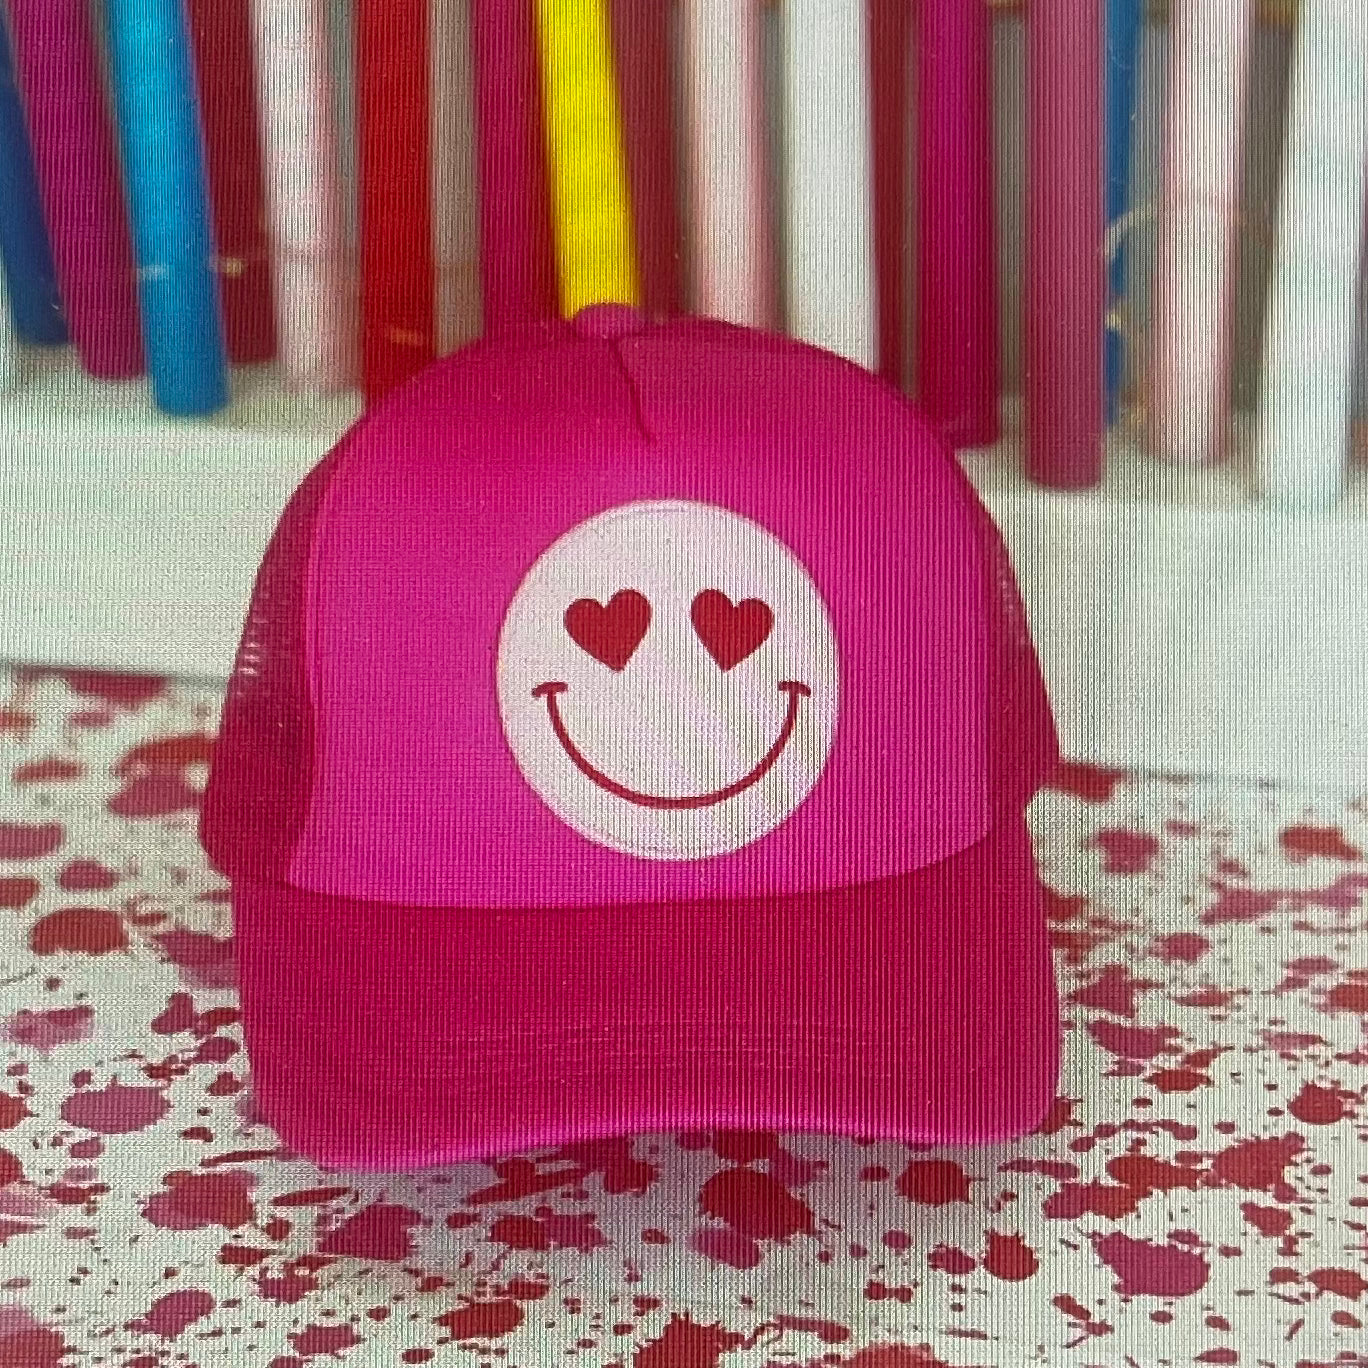 Happy Heart Trucker Hat